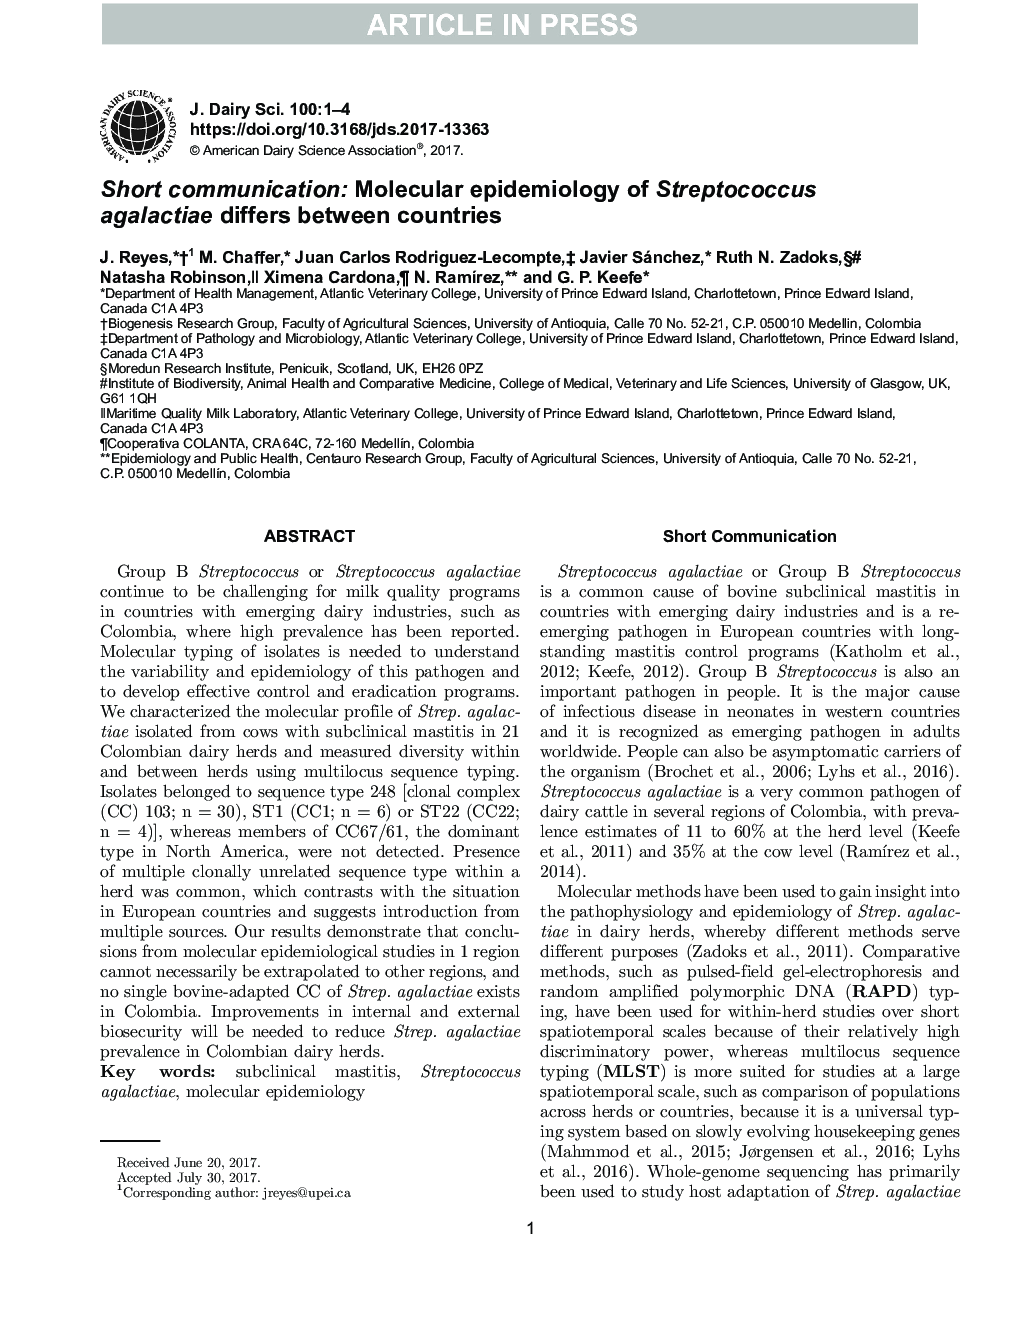 ارتباط کوتاه: اپیدمیولوژی مولکولی استرپتوکوکوس آگالاکتیا در کشورهای مختلف متفاوت است 